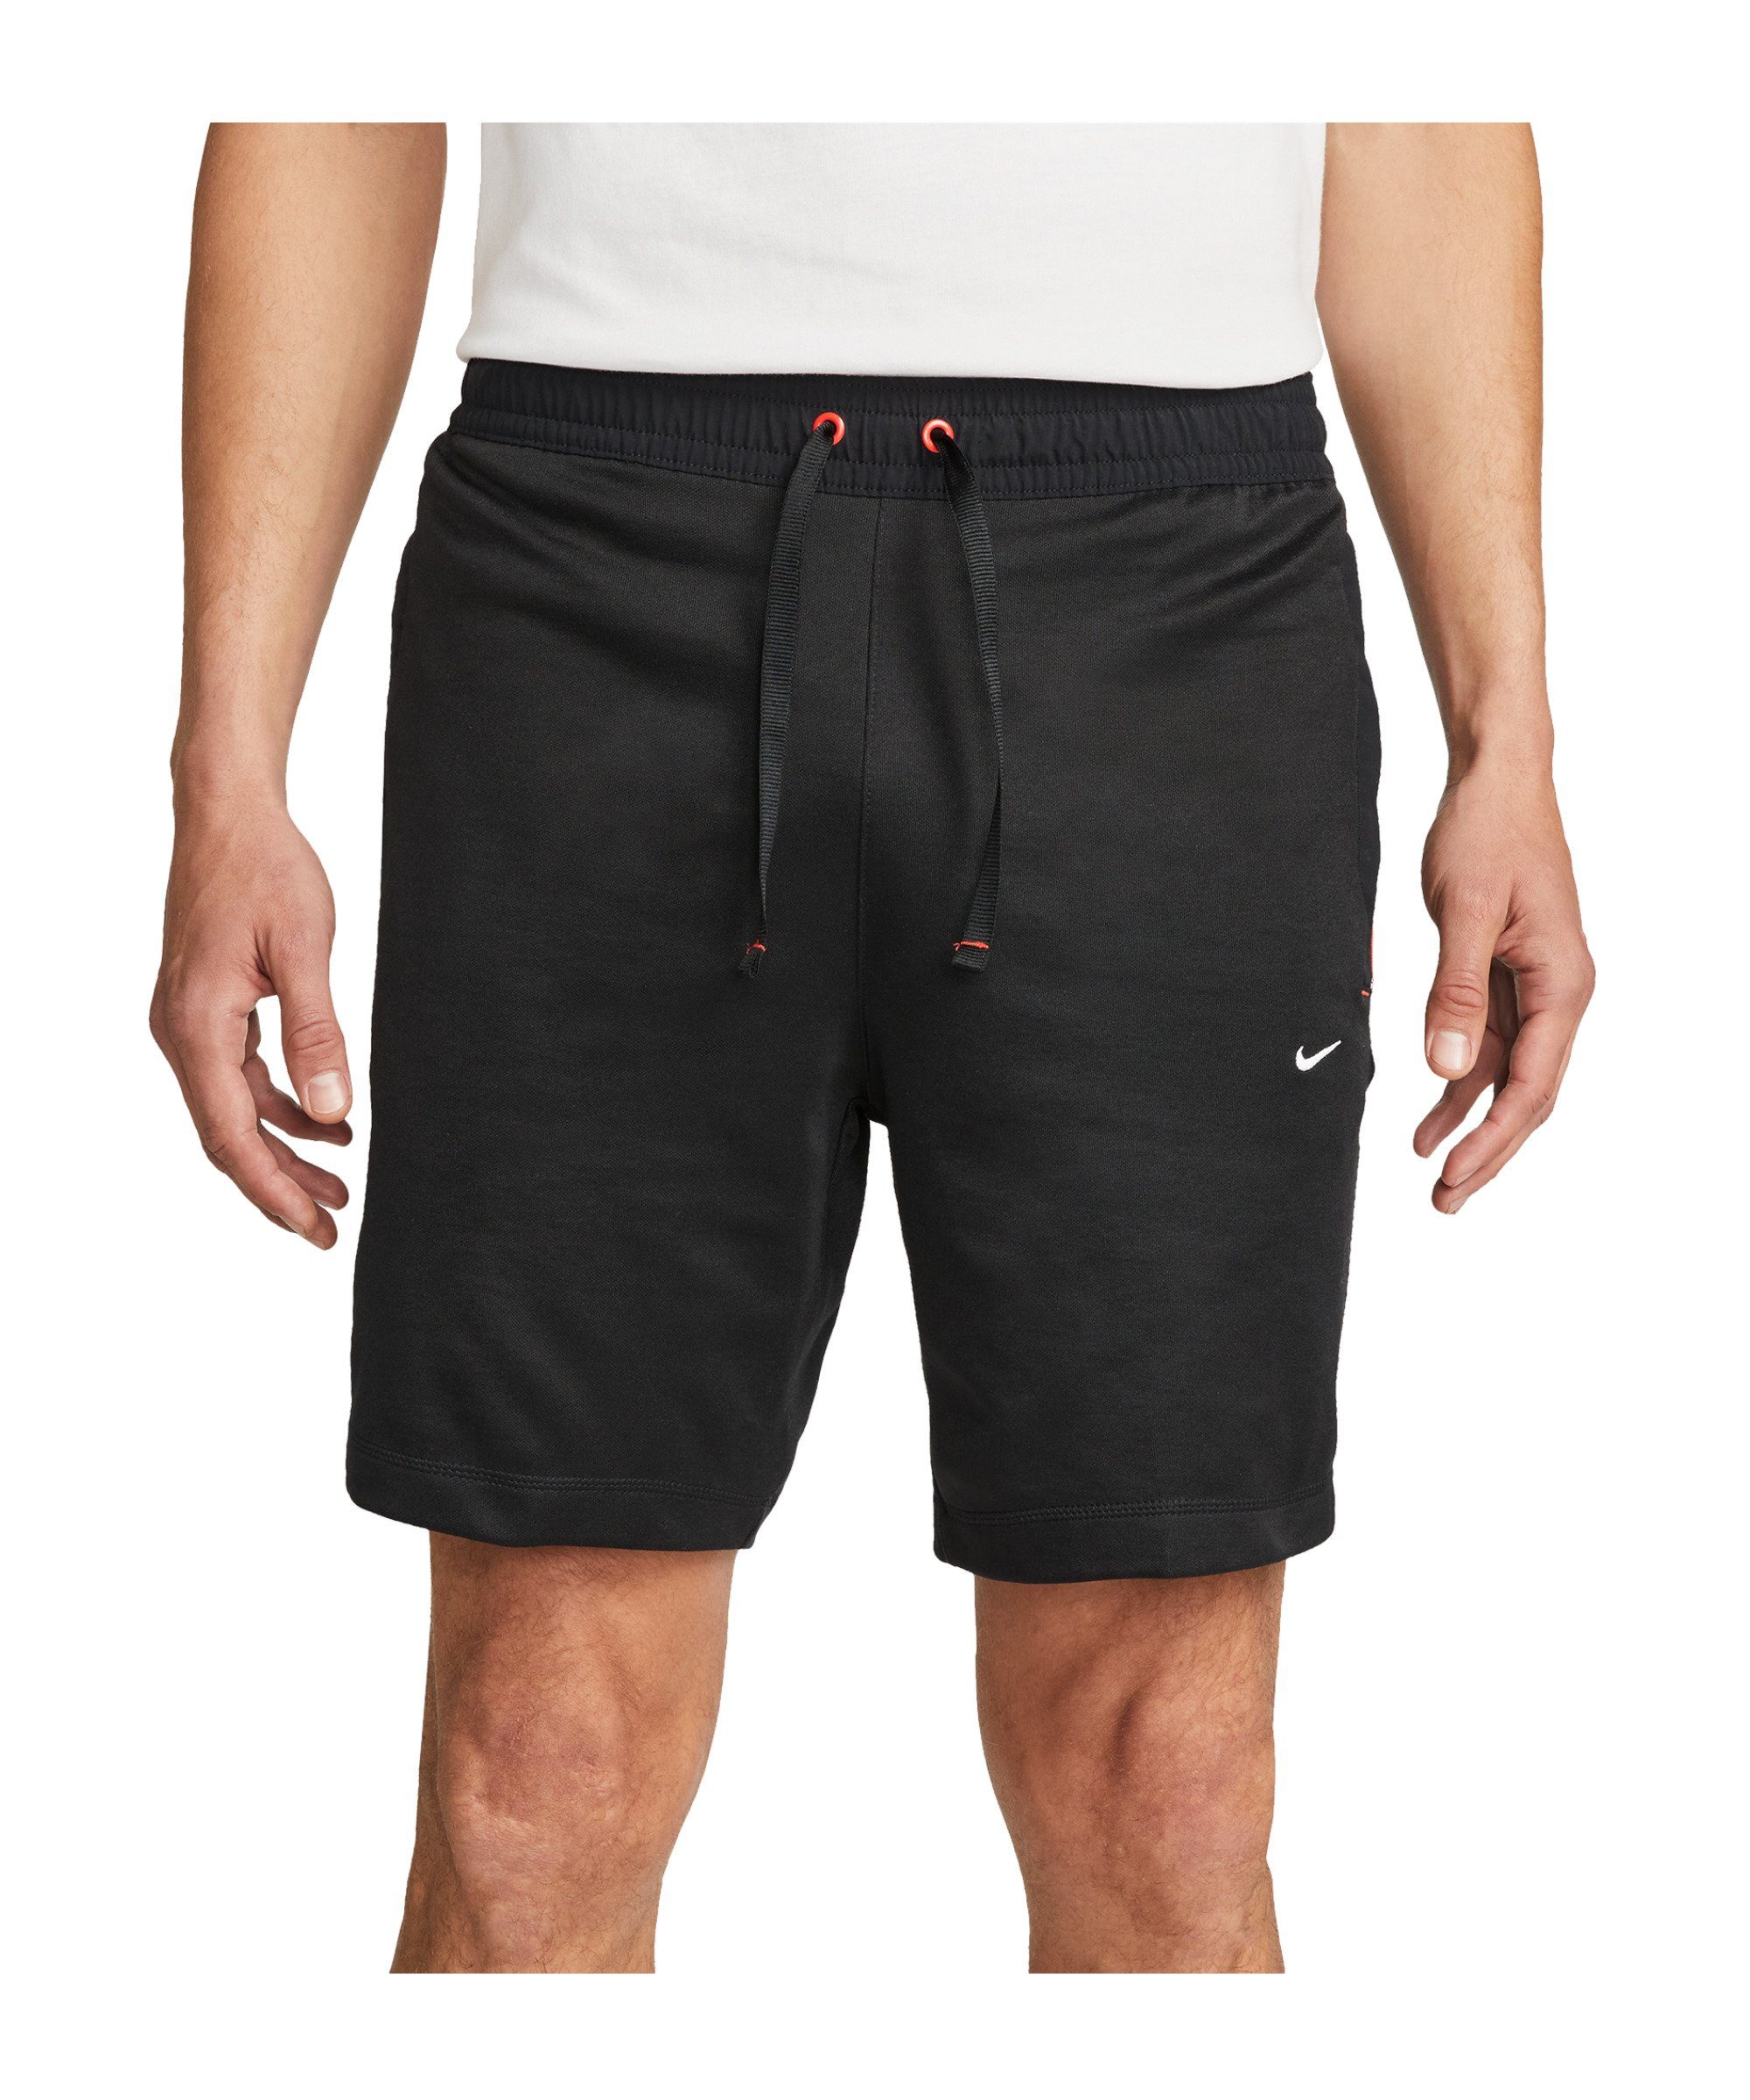 schwarzrotweiss F.C. Nike Short Jogginghose 8in Tribuna Sportswear